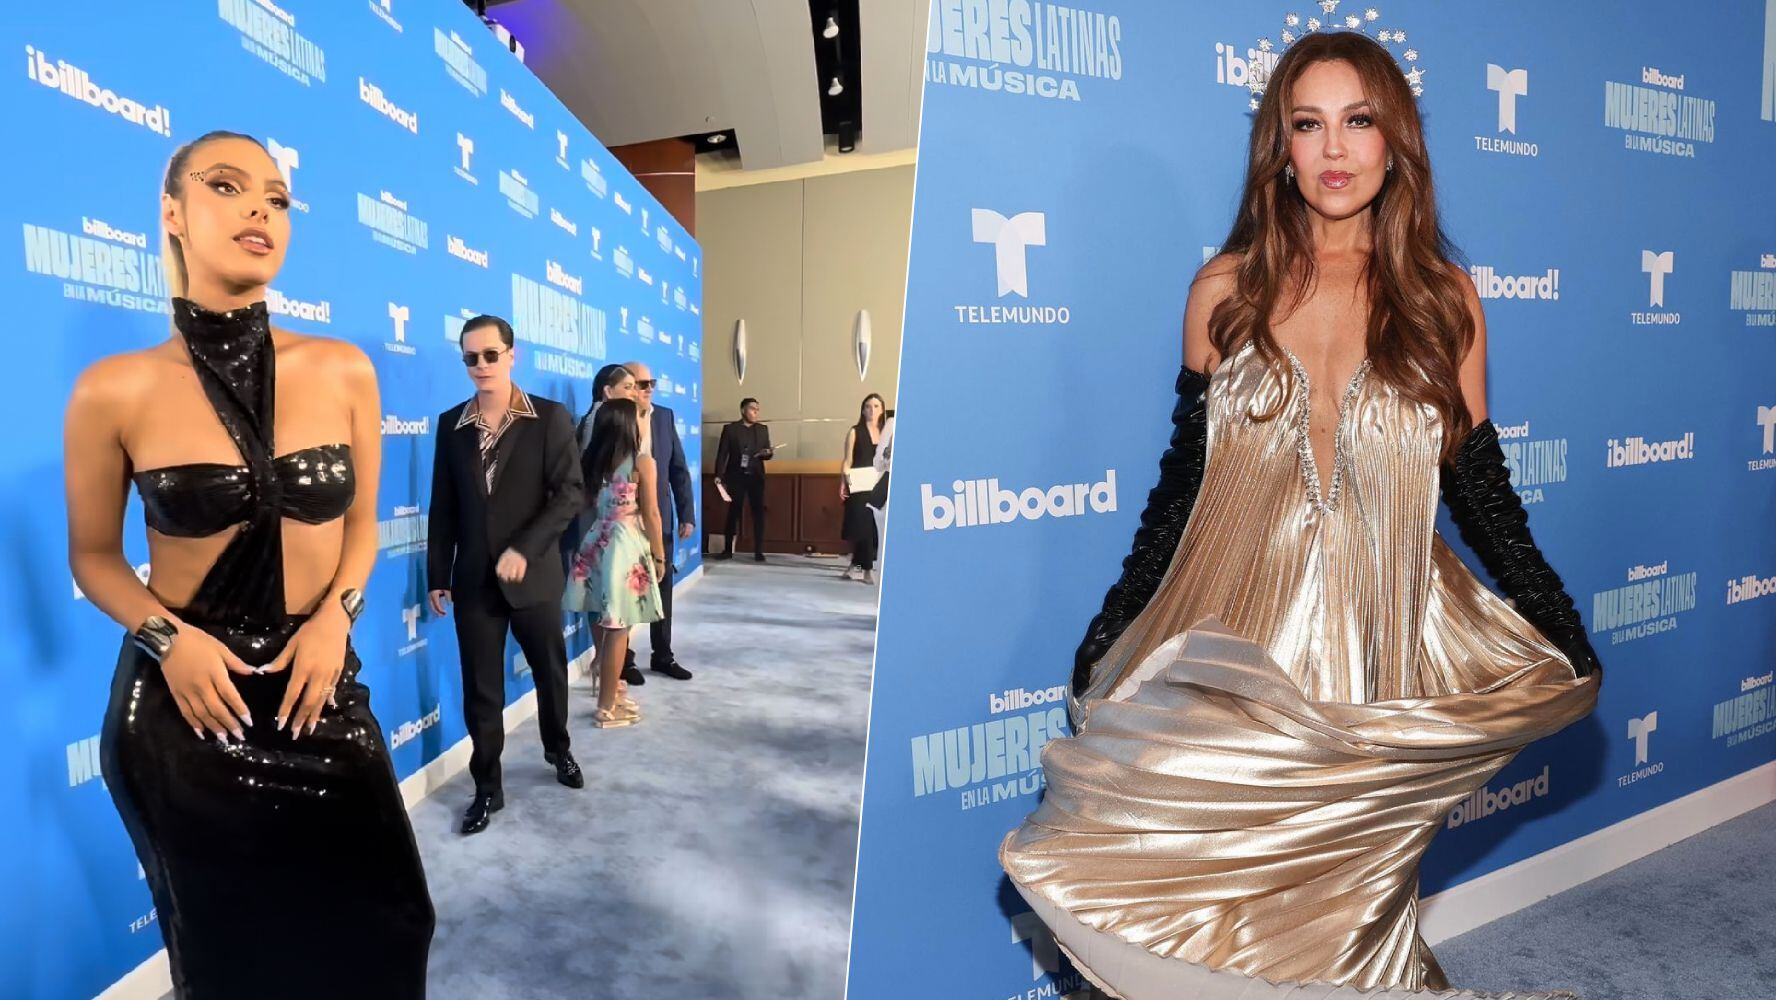 Lele Pons y Thalía fueron al evento de Mujeres en la Música Latina de Billboard. (Foto: Instagram / @billboardlatin)